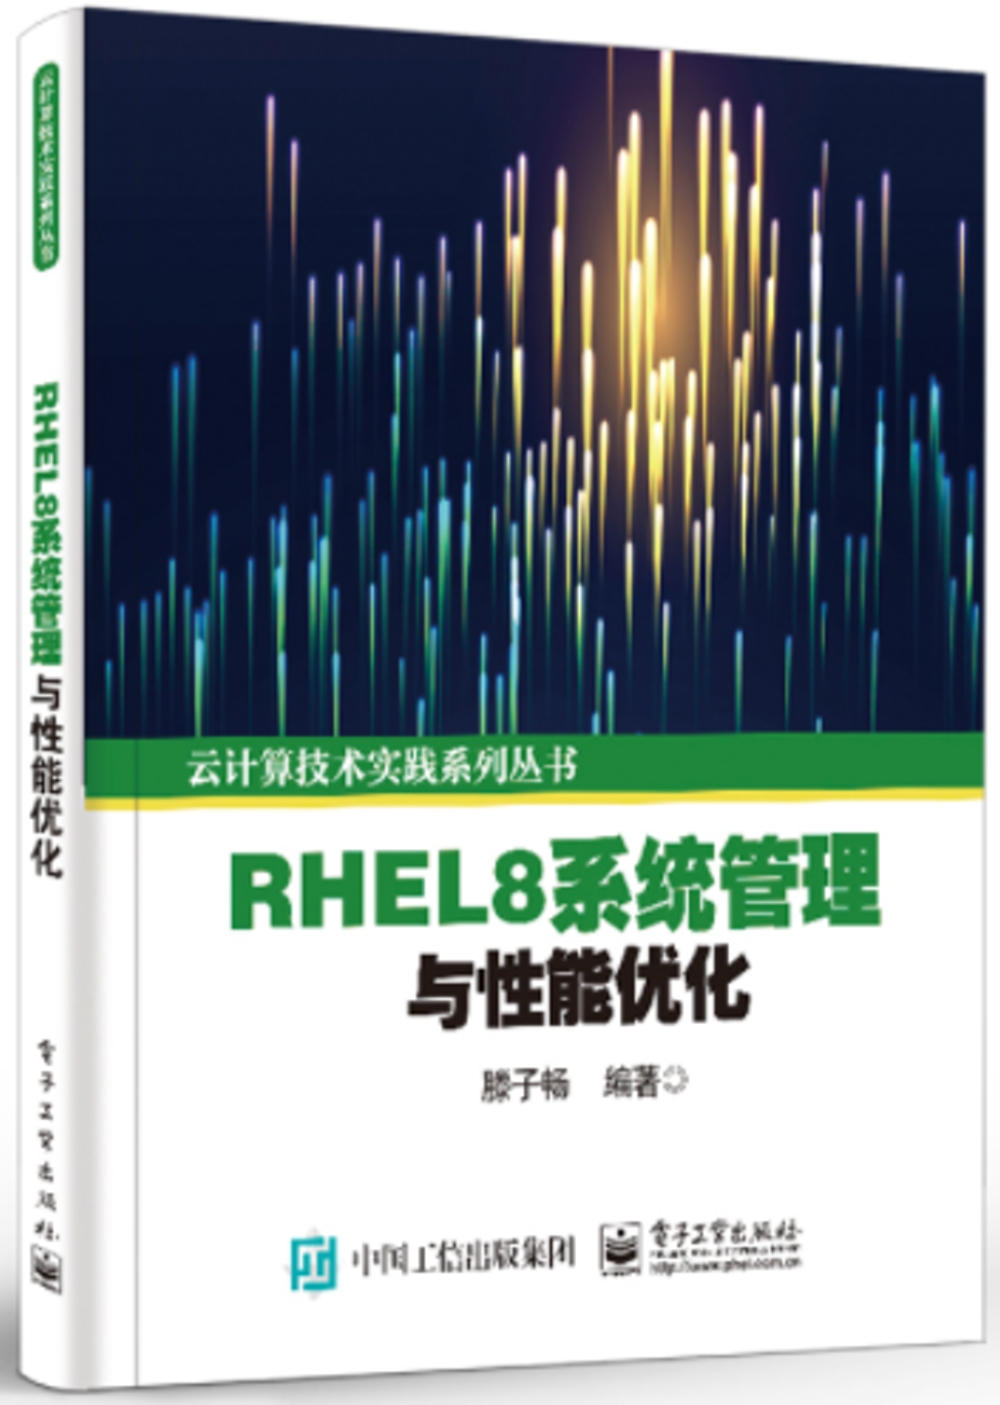 RHEL8系統管理與性能優化